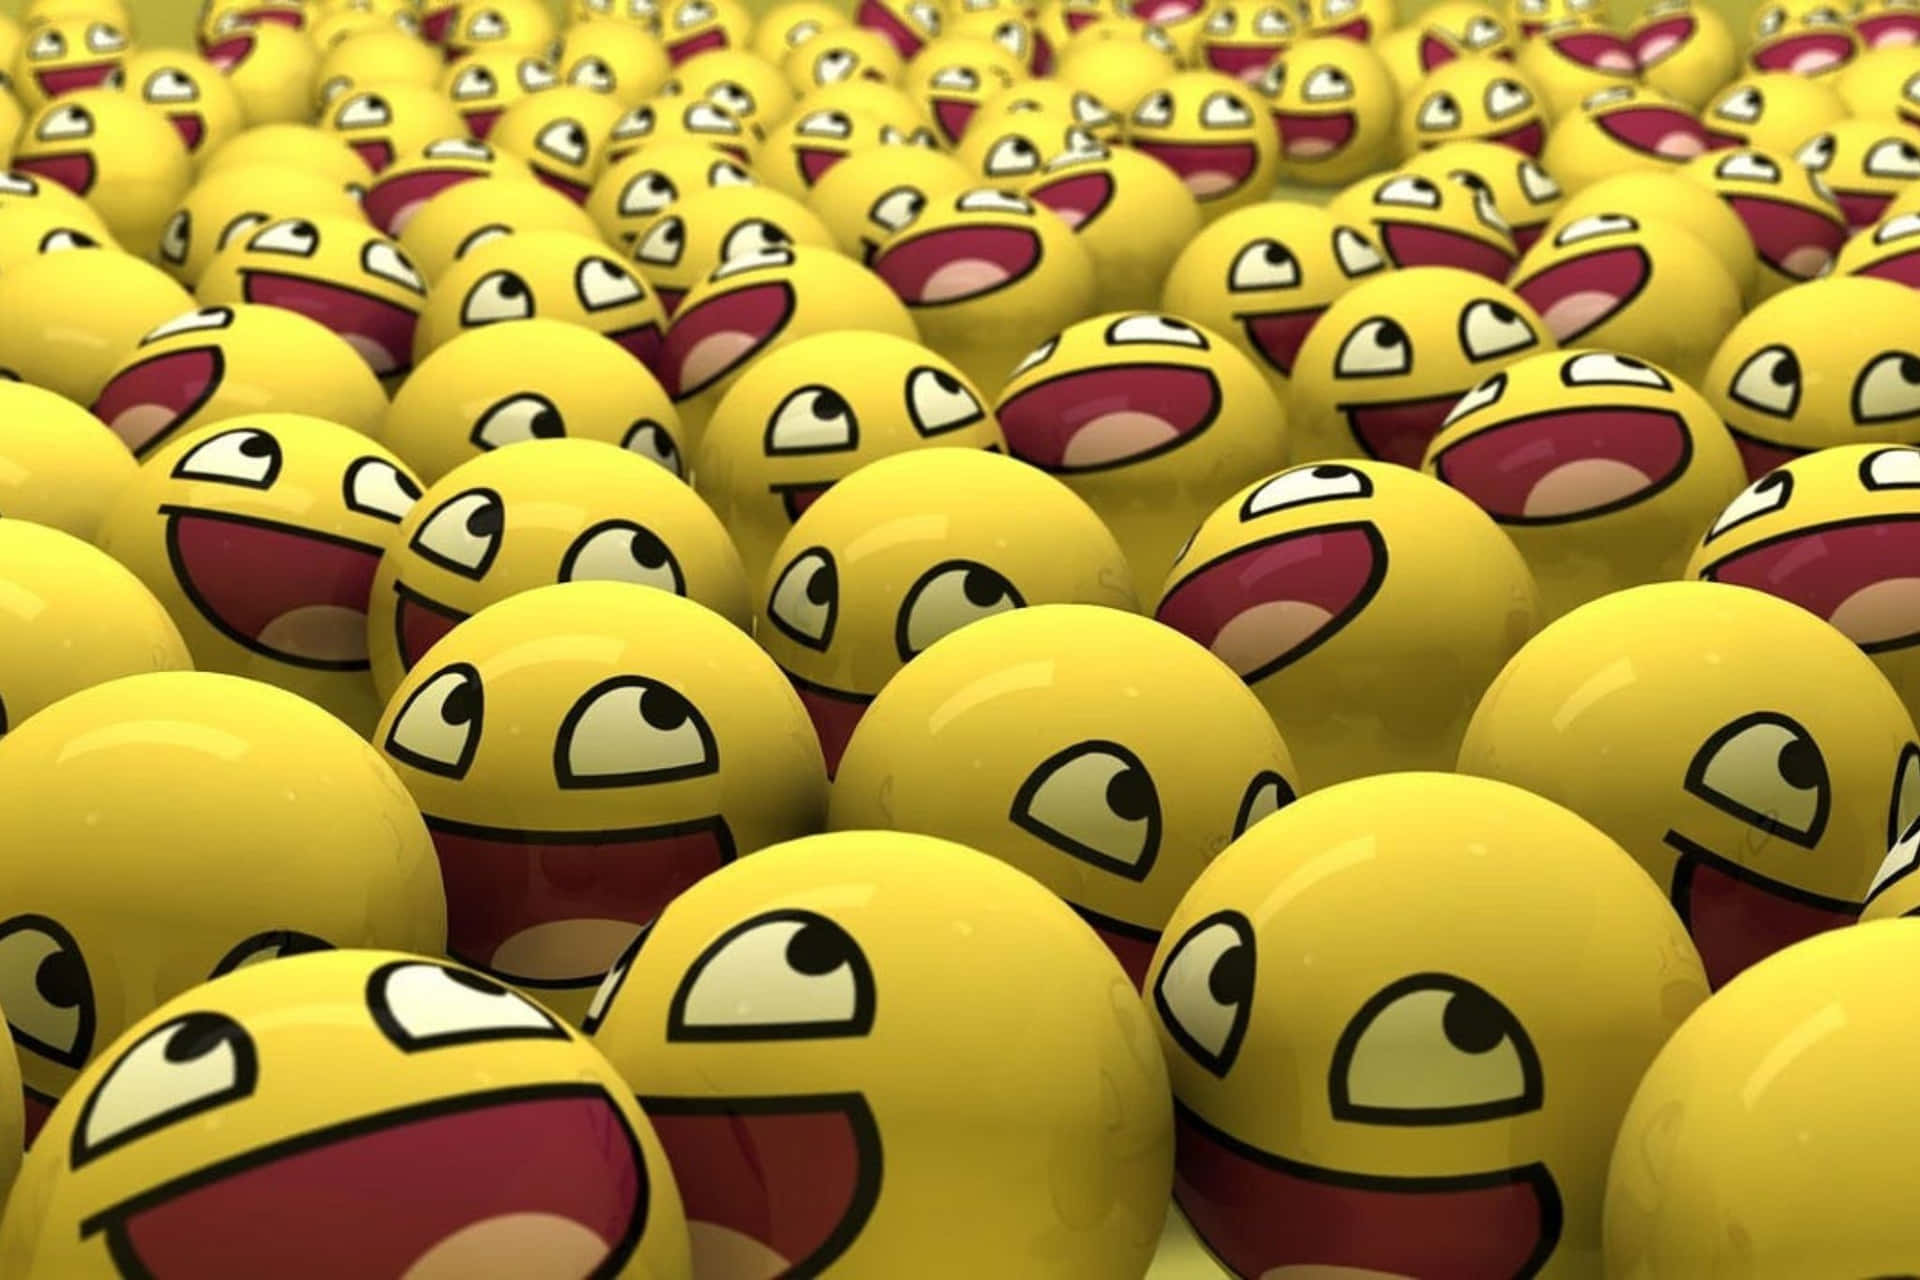 Seaof Laughter Emojis Wallpaper